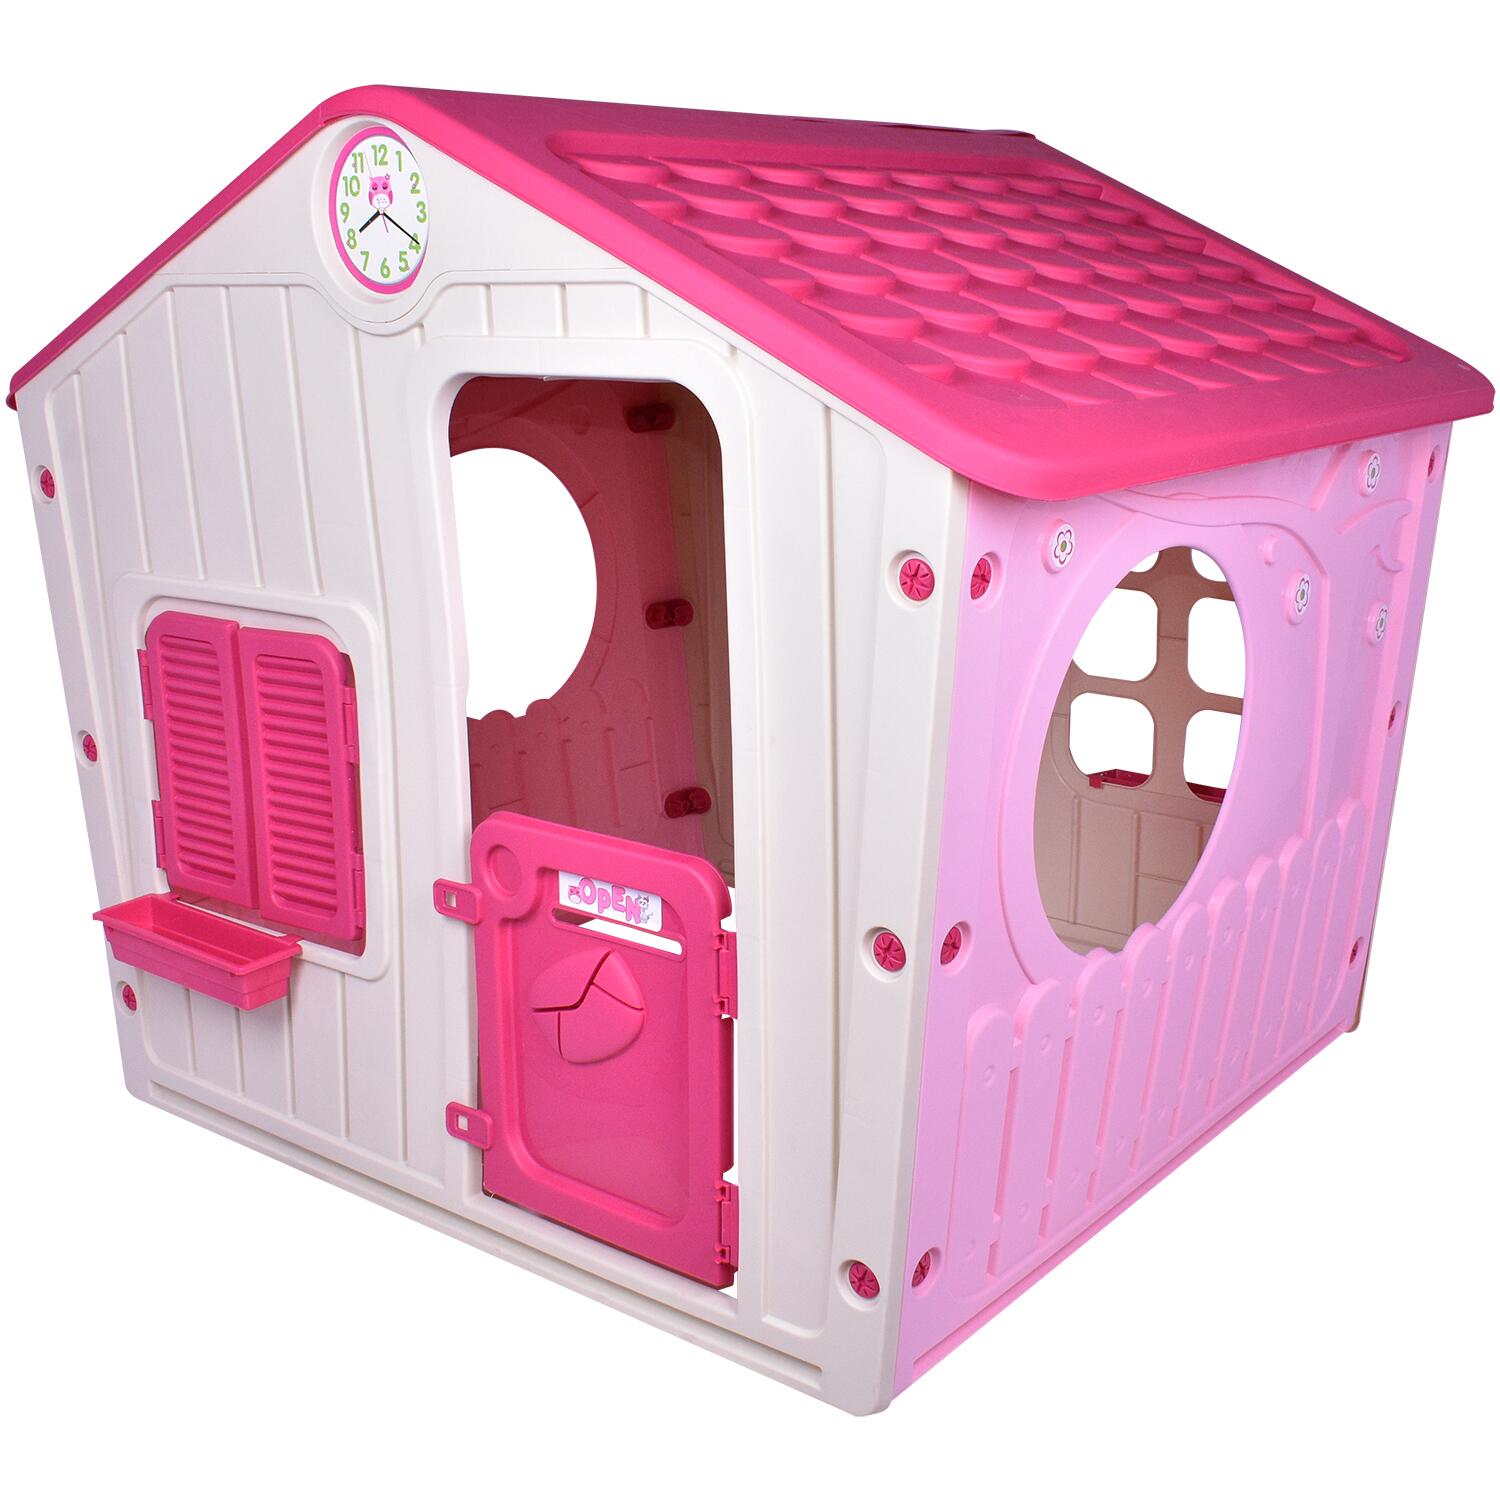 casinha-de-brinquedo-pink-561110-belfix_